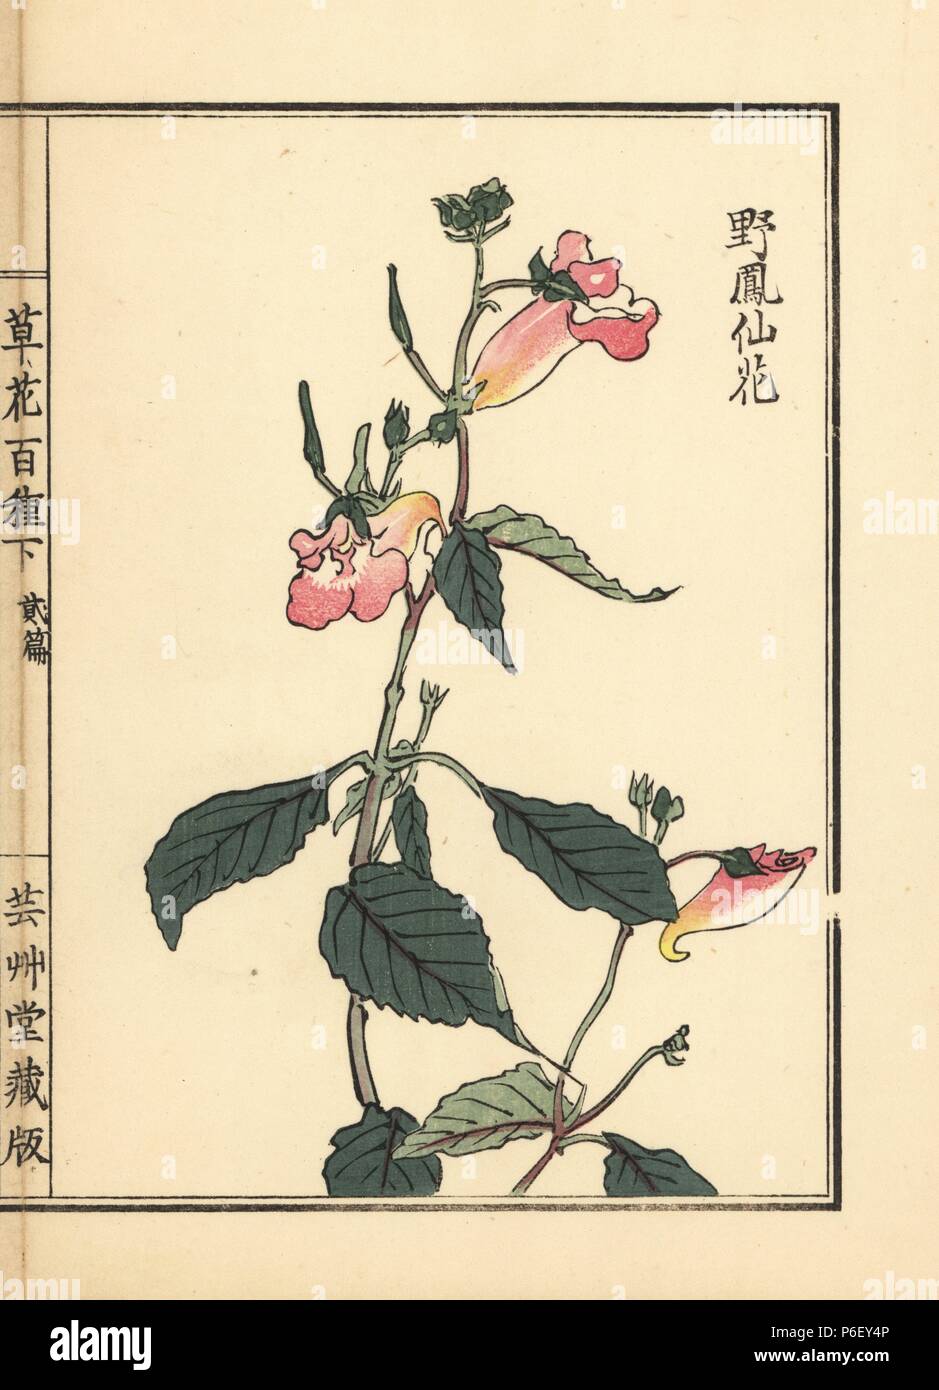 Yahousenka or wild balsam, Impatiens balsamina. Handcoloured woodblock print by Kono Bairei from Kusa Bana Hyakushu (One Hundred Varieties of Flowers), Tokyo, Yamada, 1901. Stock Photo